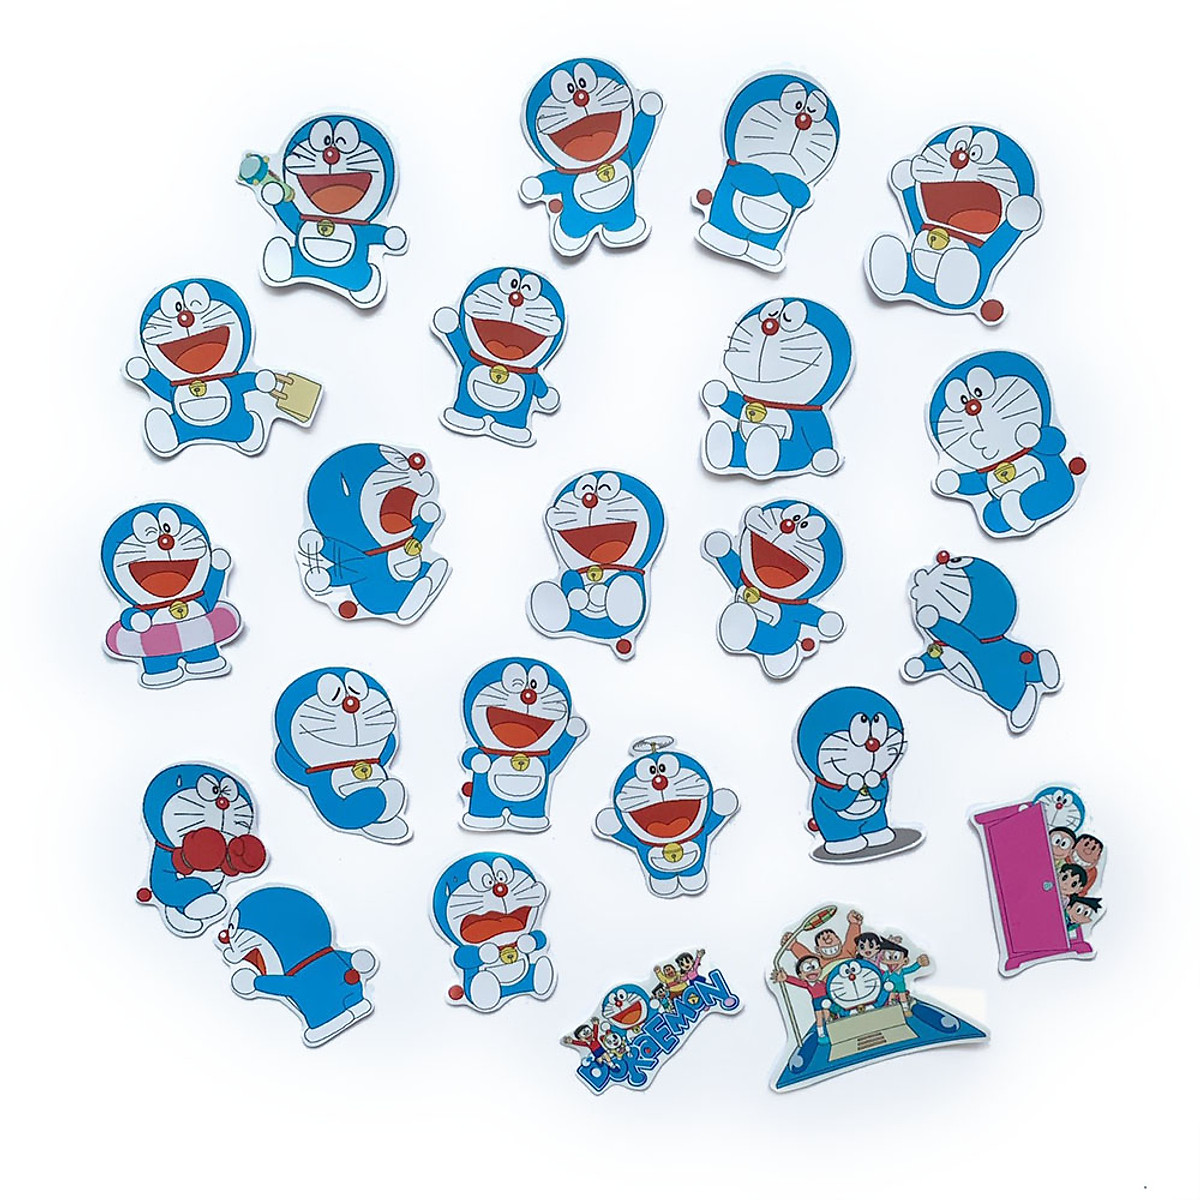 Bạn có biết rằng hình sticker Doraemon và nhóm bạn Nobita đang là một trào lưu phổ biến hiện nay không? Hãy xem hình và cùng nhau tham gia trào lưu này thôi nào!